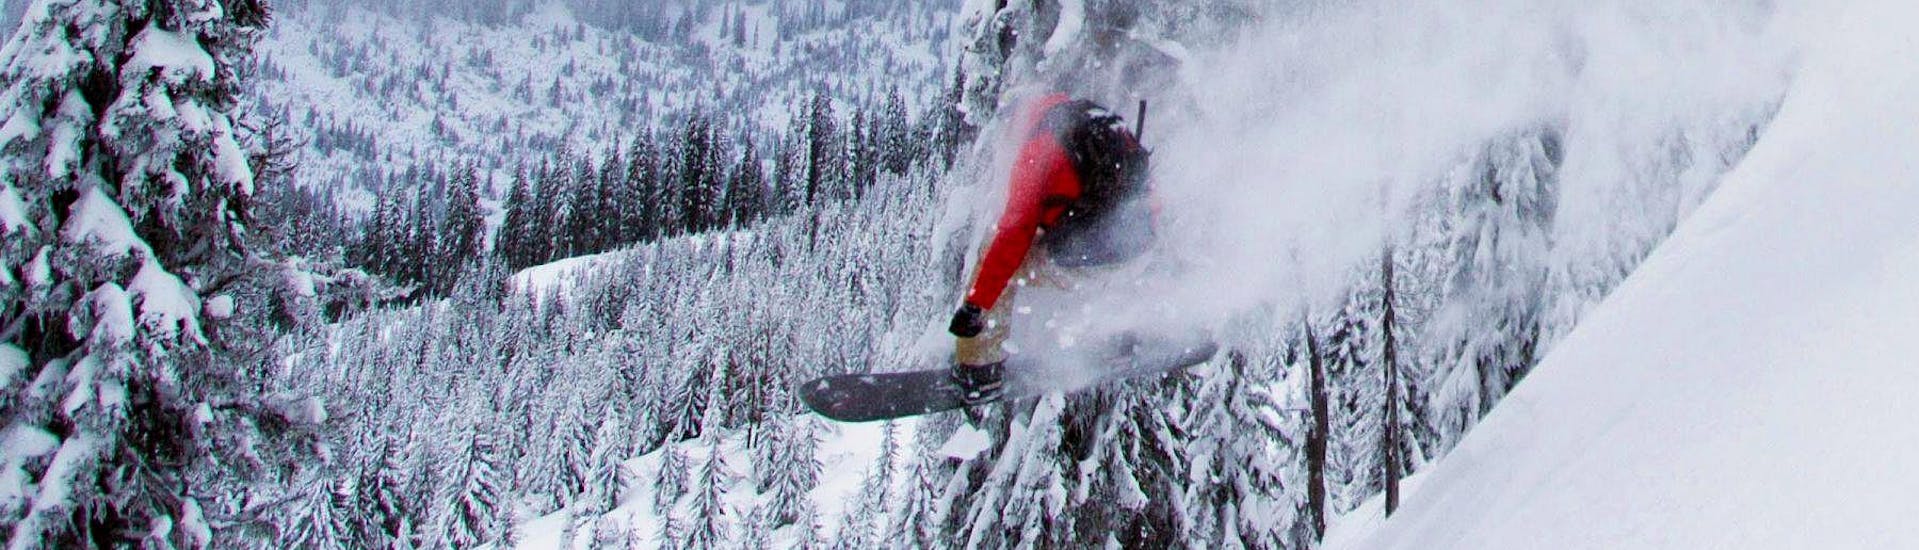 Clases de snowboard privadas a partir de 6 años para todos los niveles.